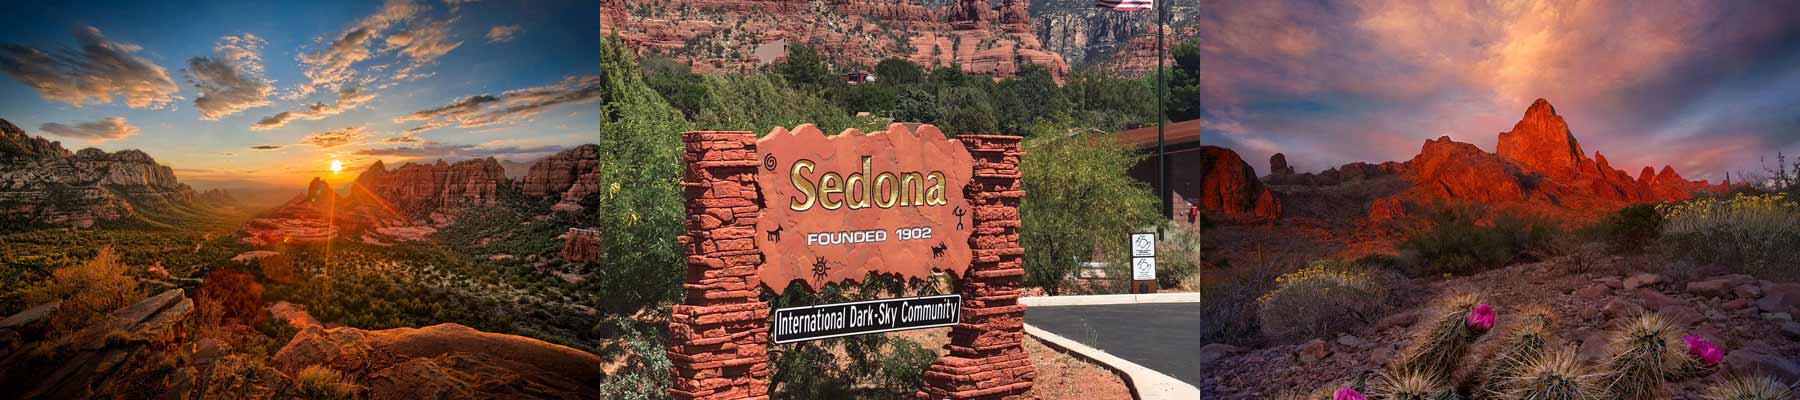 Sedona Founded 1902